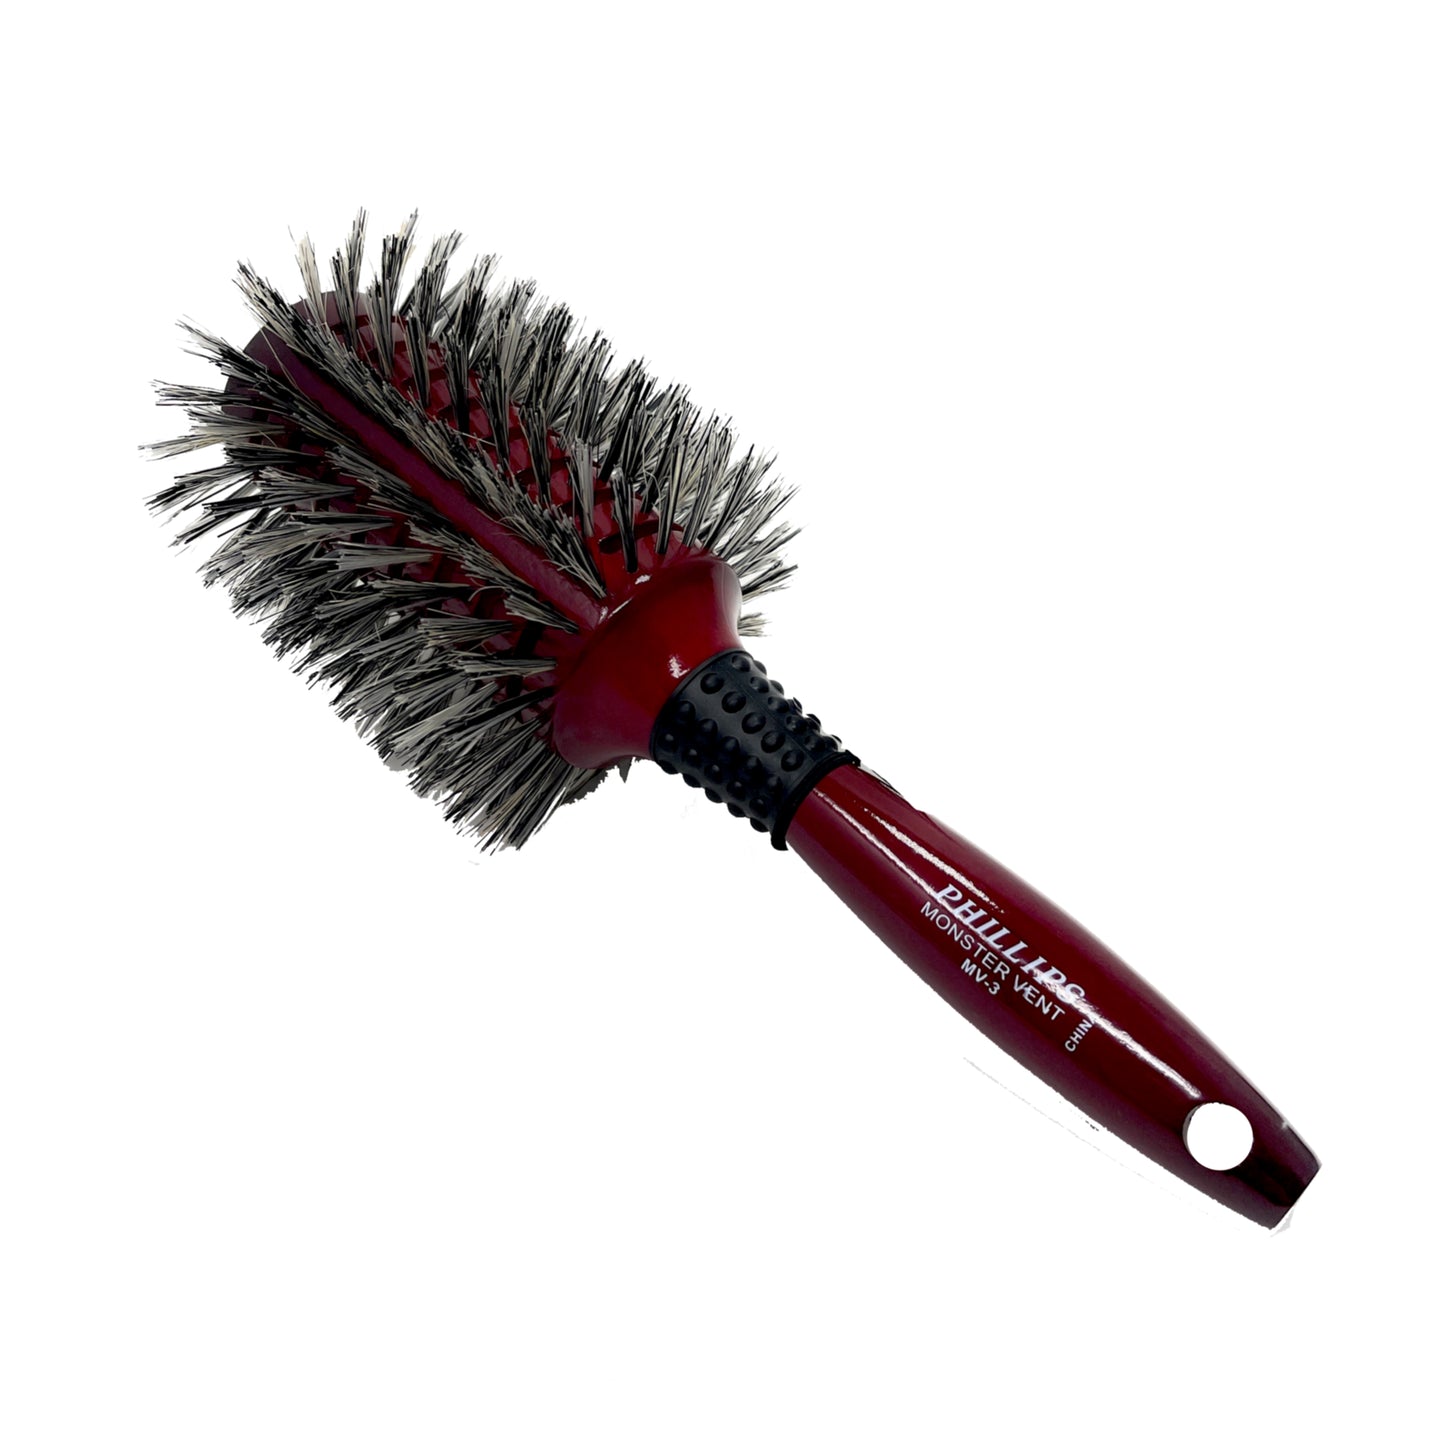 Phillips Brush Monster Vent Barrel Reinforced Bristle Wood Hair Dry Brush For Woman Men 1 Pc. MV-3